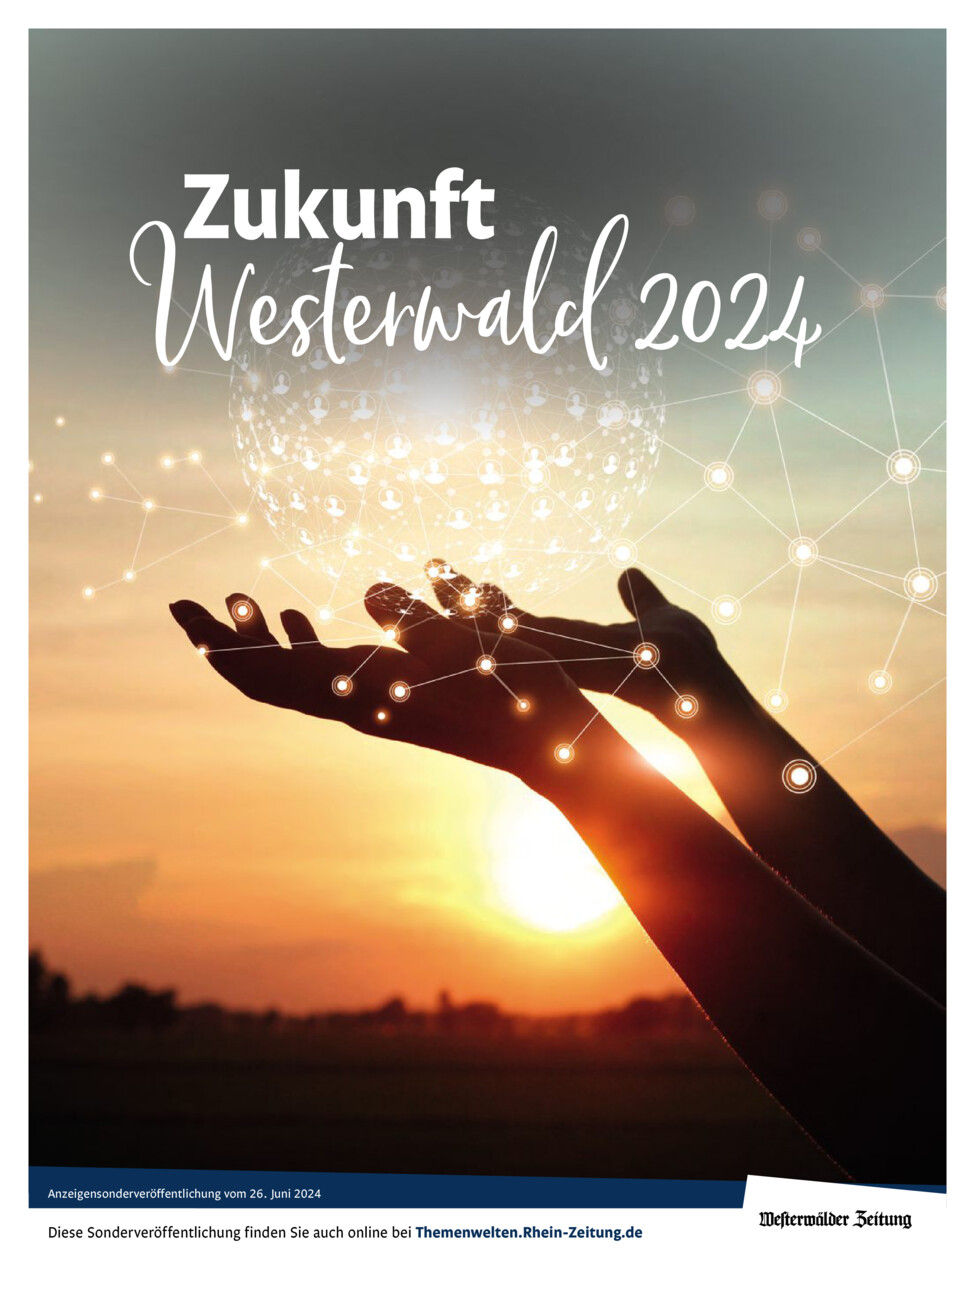 Zukunft Westerwald 2024